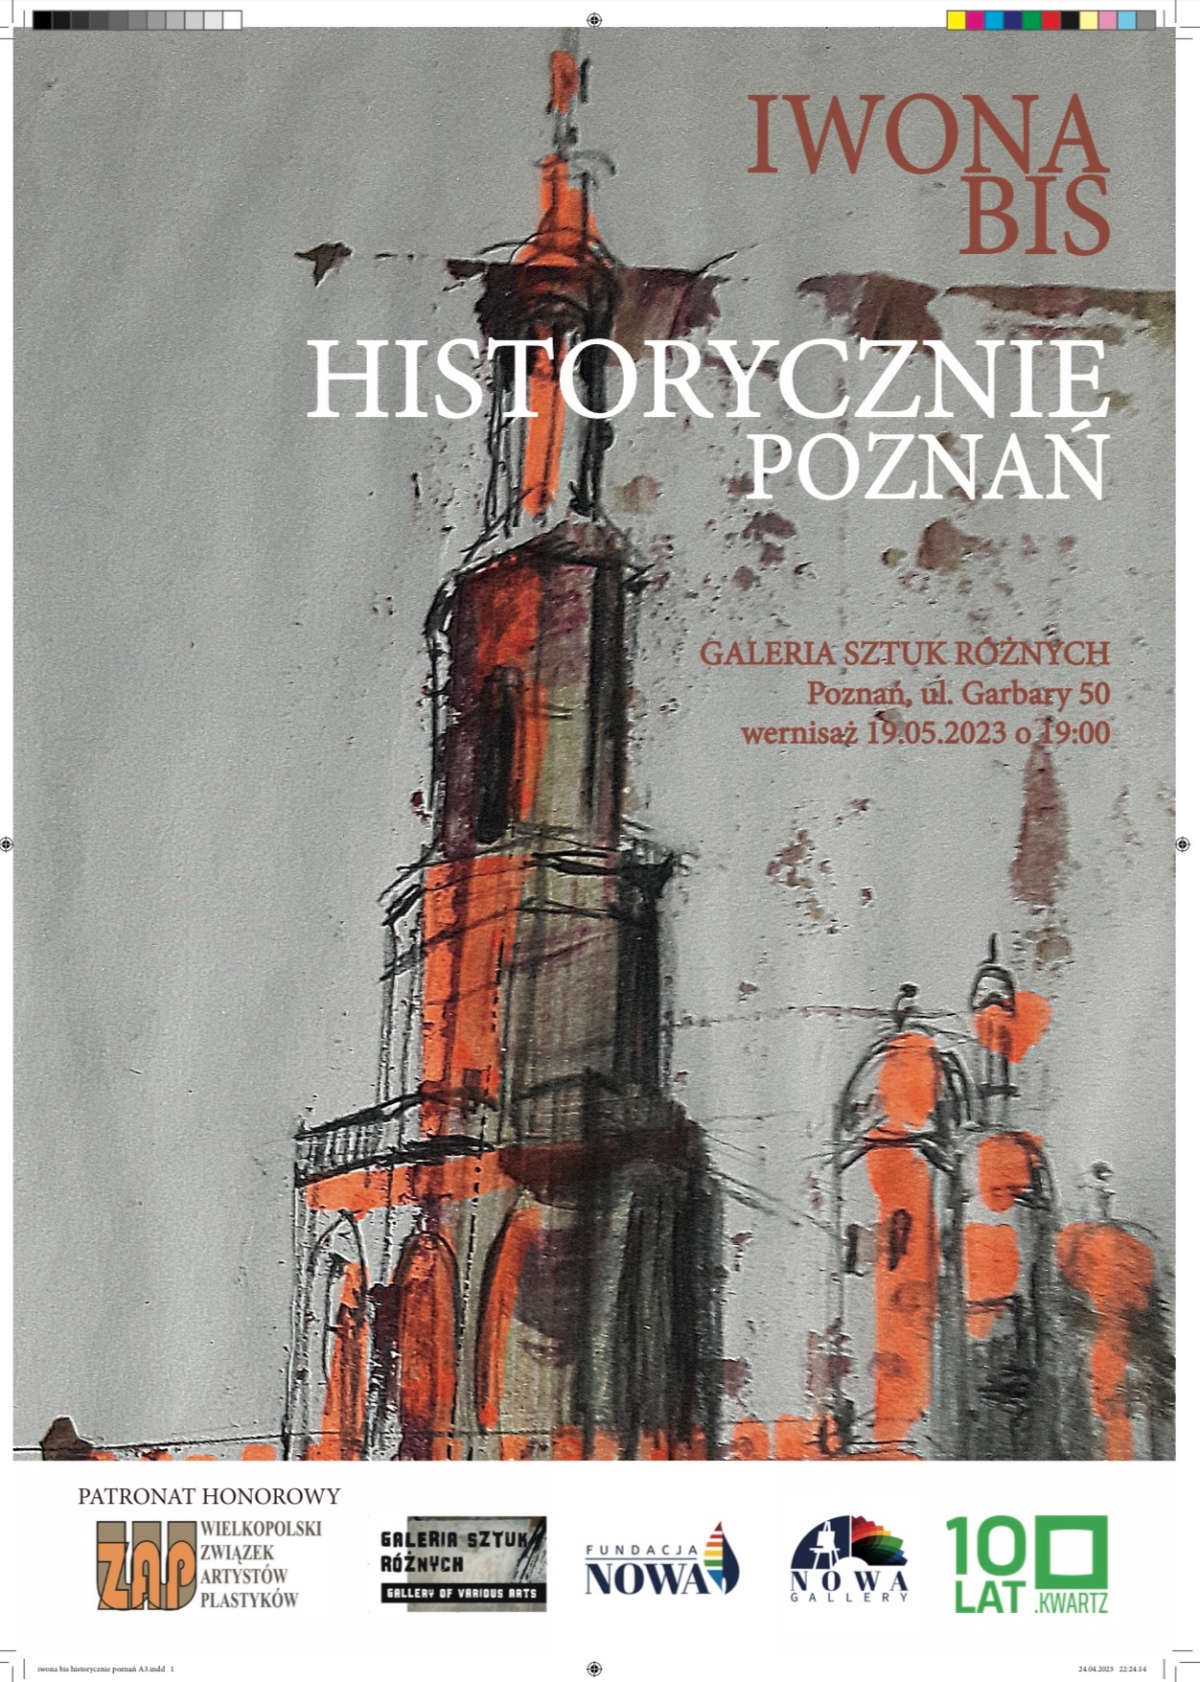 Zapraszamy! Wernisaż “Historycznie Poznań” 19.05 godz 19:00